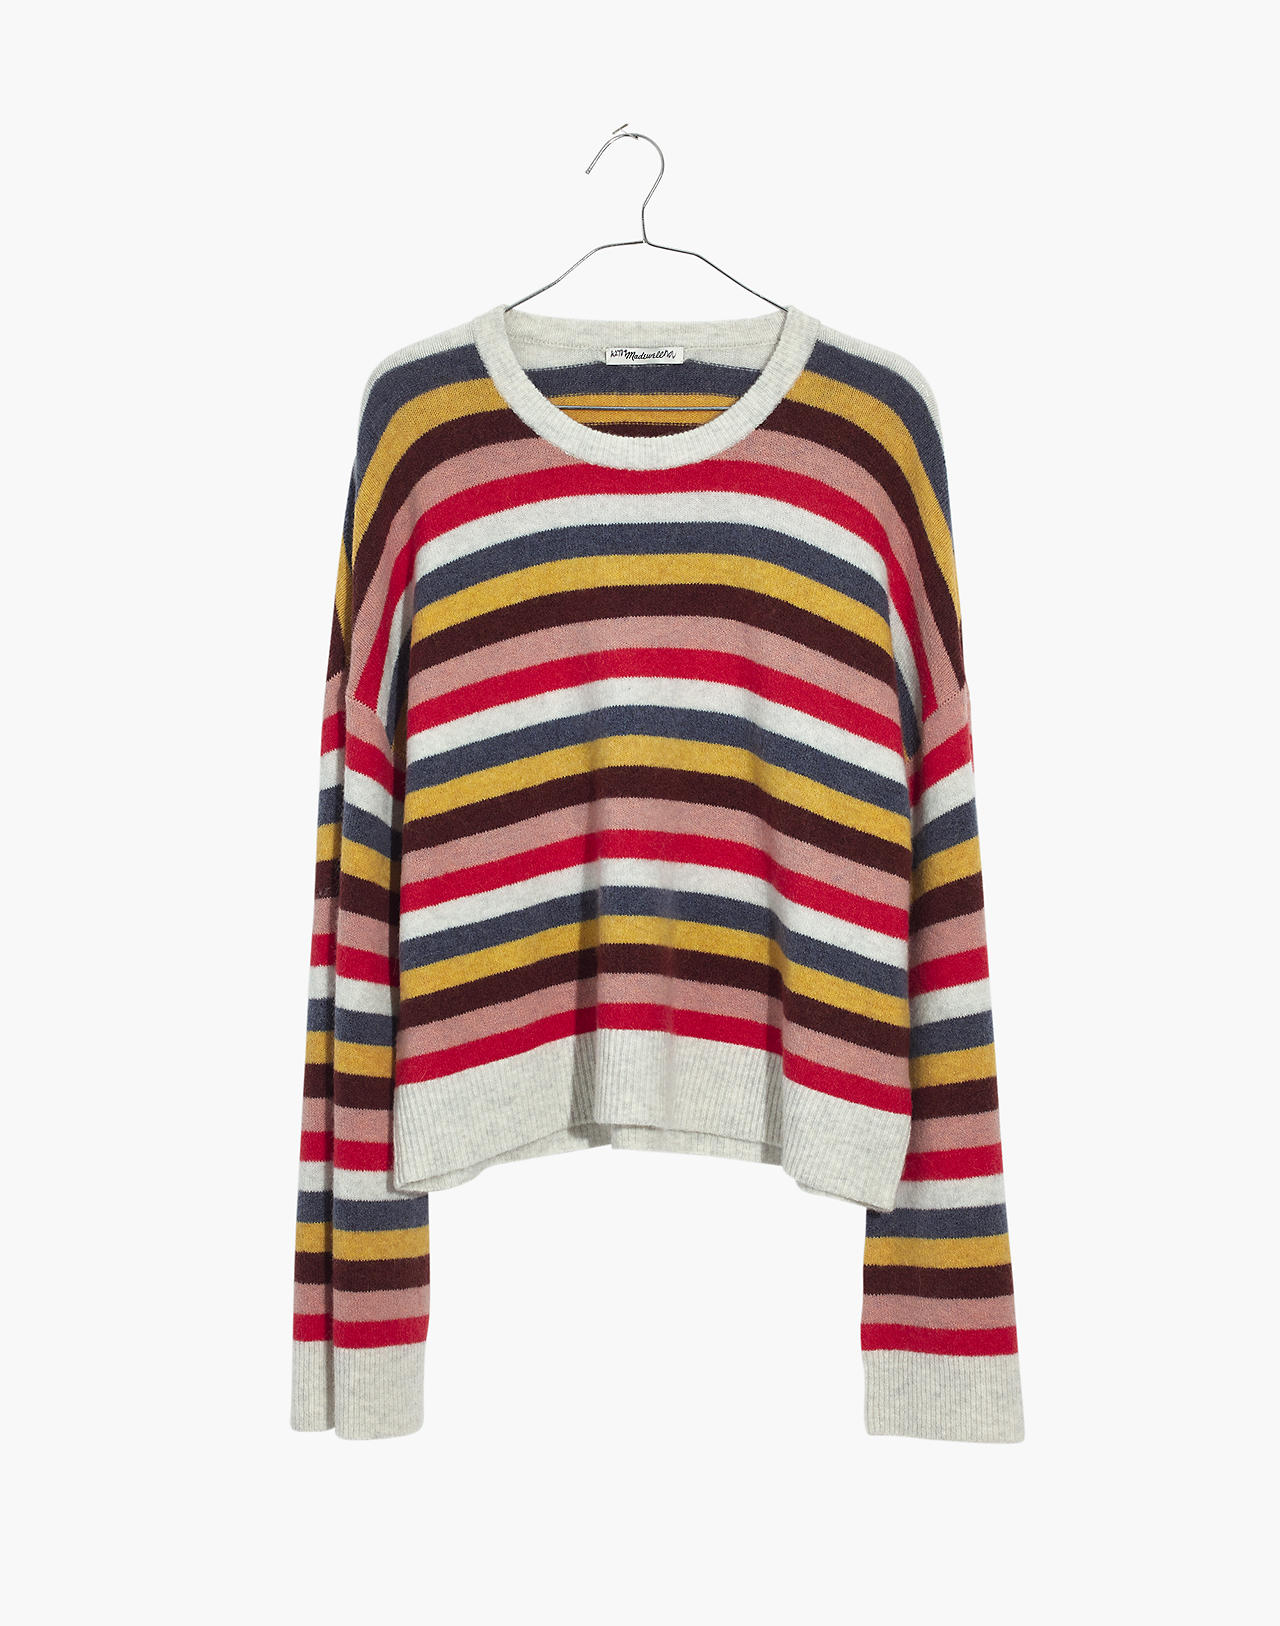 Cardiff Striped Crewneck Sweater in Coziest Yarn